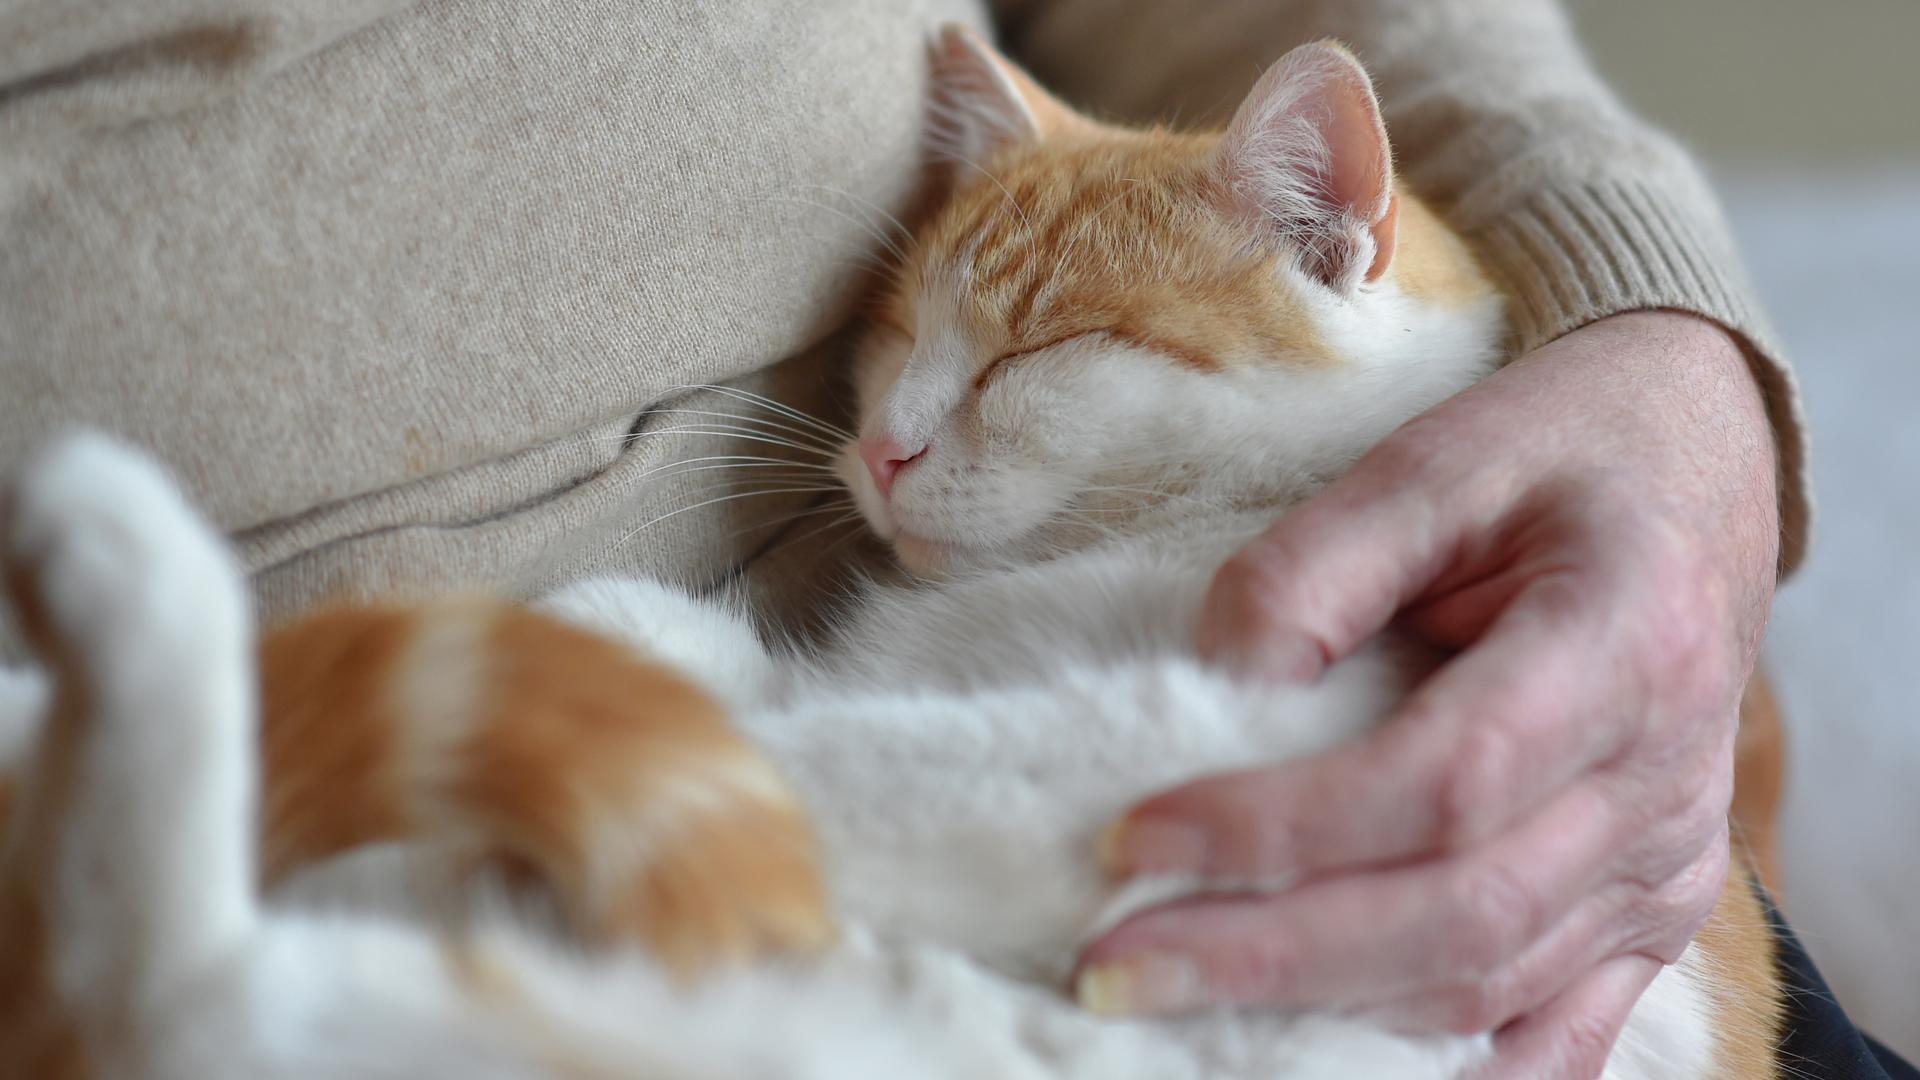 Katzen entwickeln eine ganz ähnliche Bindung an ihre Bezugsperson wie Kleinkinder.  Haustiere schenken Wärme und - wenn man sie gut behandelt – bedingungslose Liebe.   